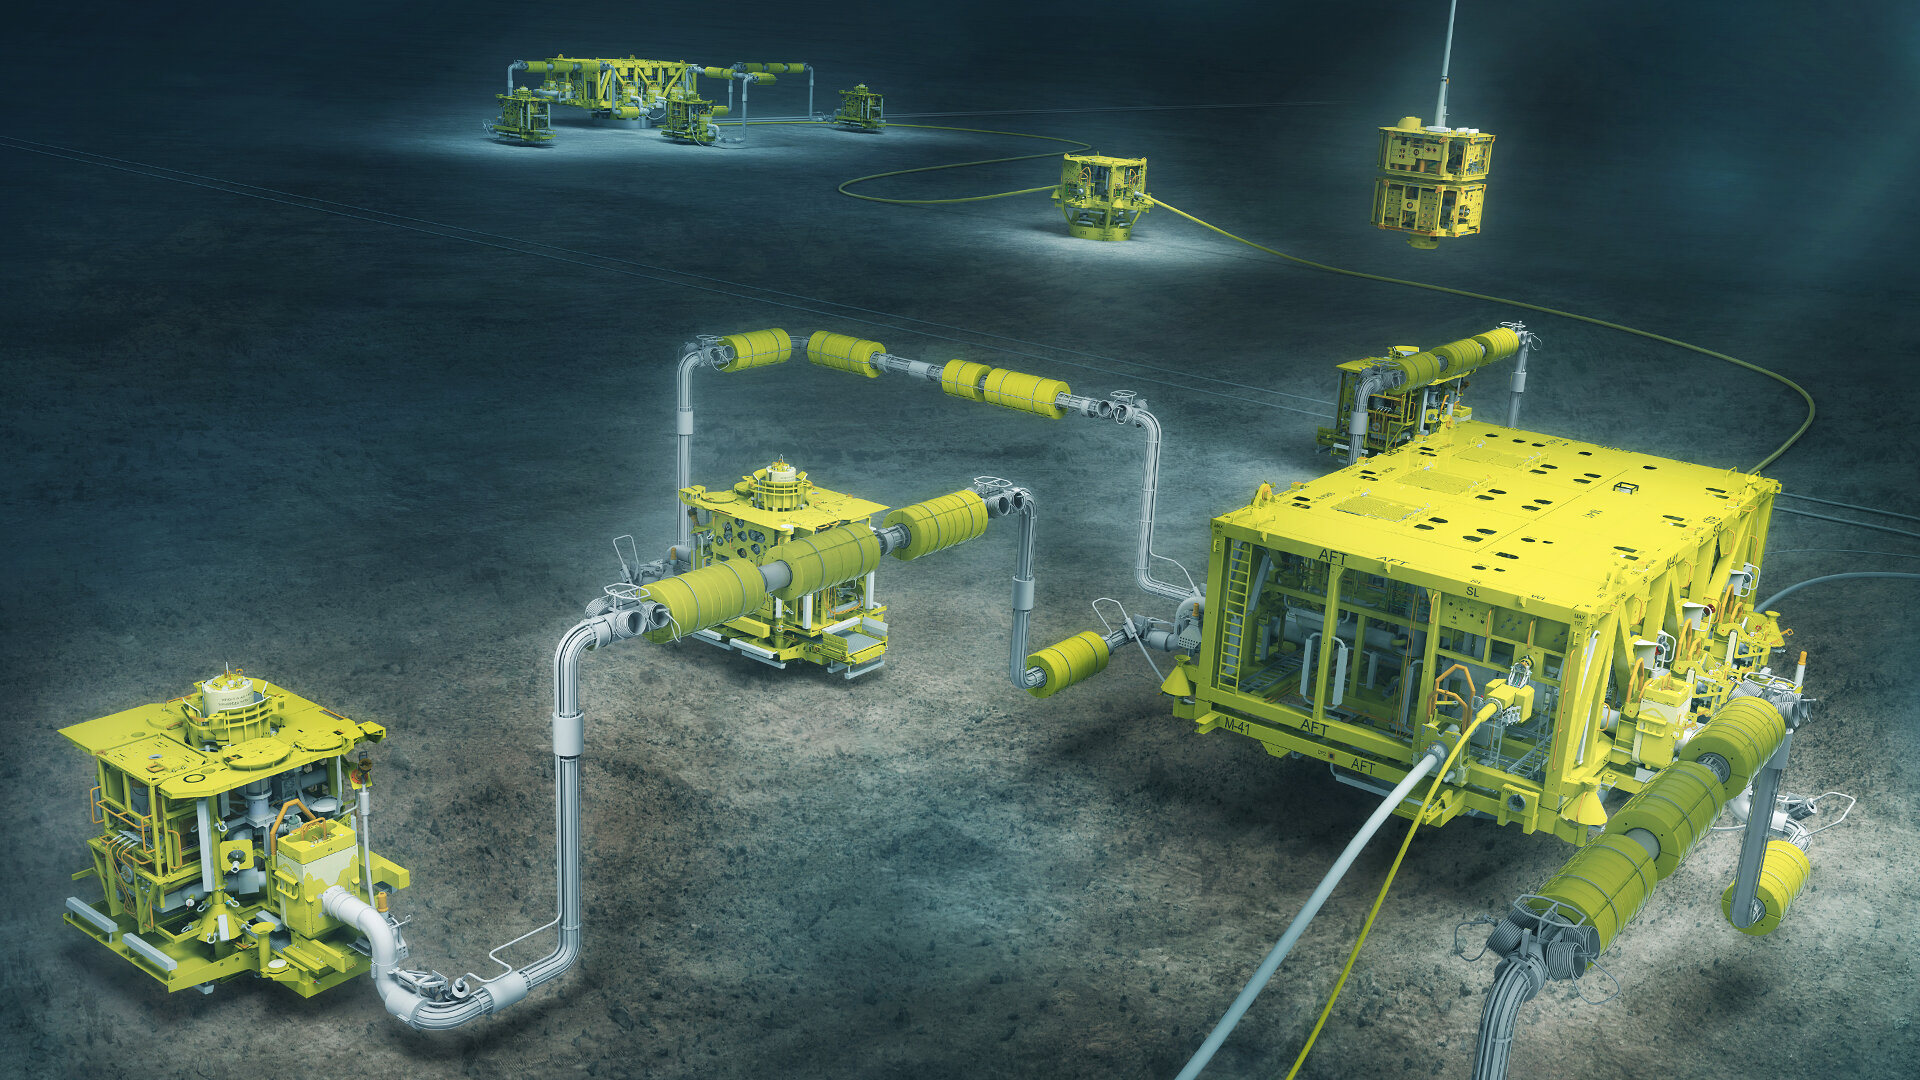 As entregas dos equipamentos subsea do novo contrato estão previstas para iniciar em 2025. A Aker Solutions agora fará parte dos projetos da TotalEnergies na região do Campo de Moho Nord.